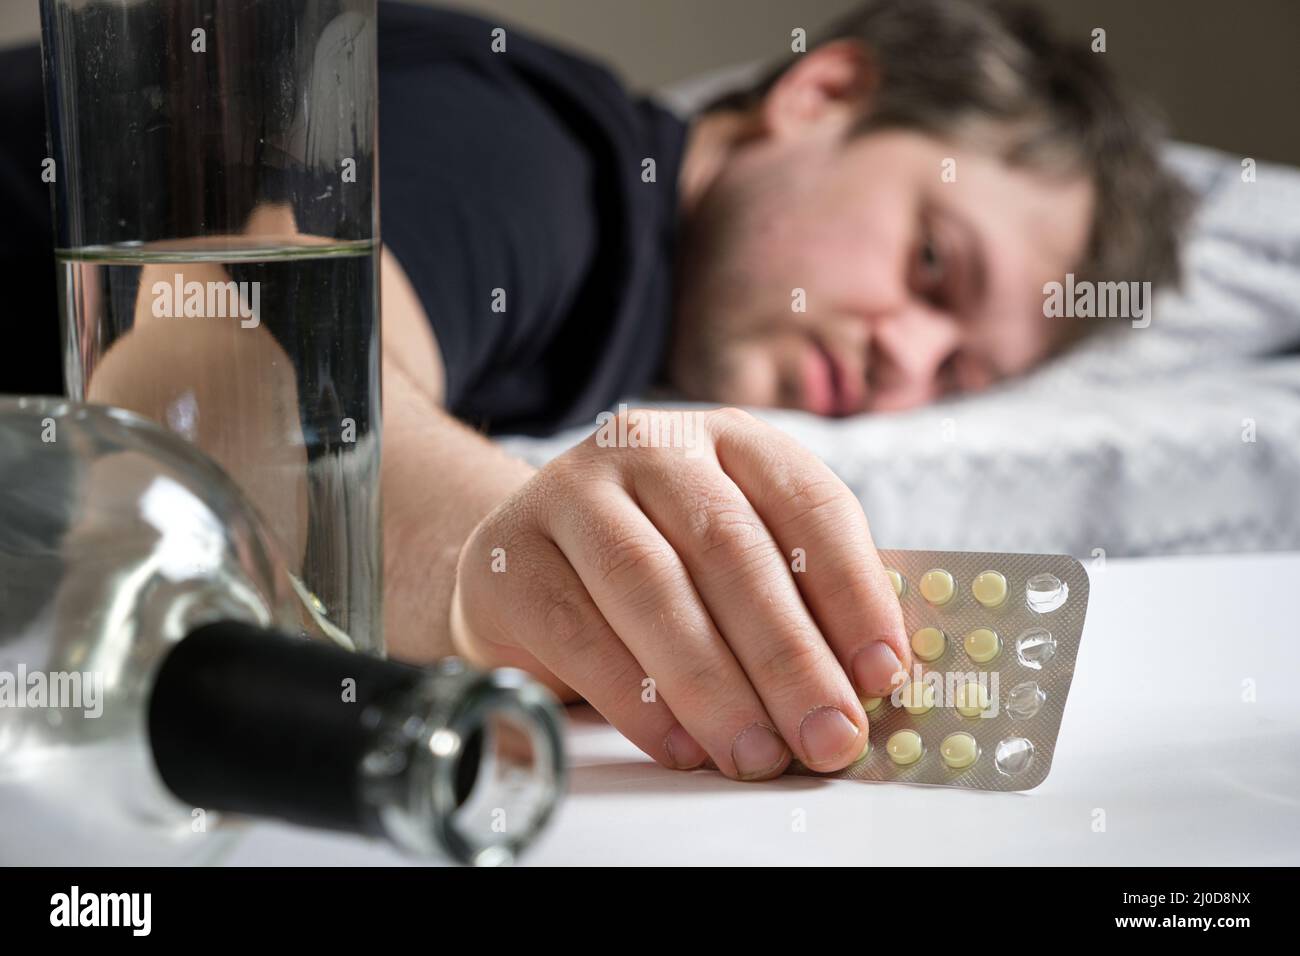 Un uomo si trova su un letto dopo una festa di alcol, tenendo in mano le pillole di hangover Foto Stock